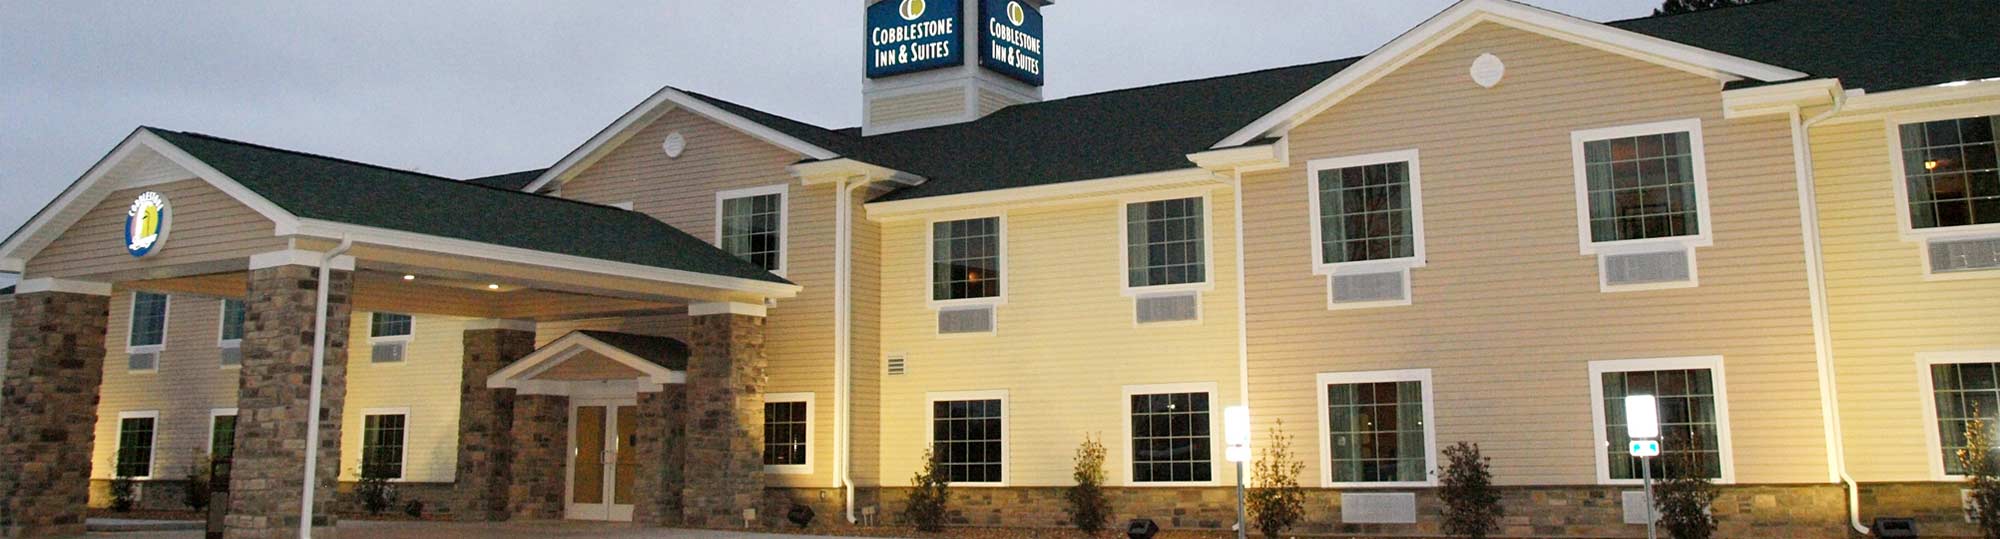 Cobblestone Inn & Suites Vinton